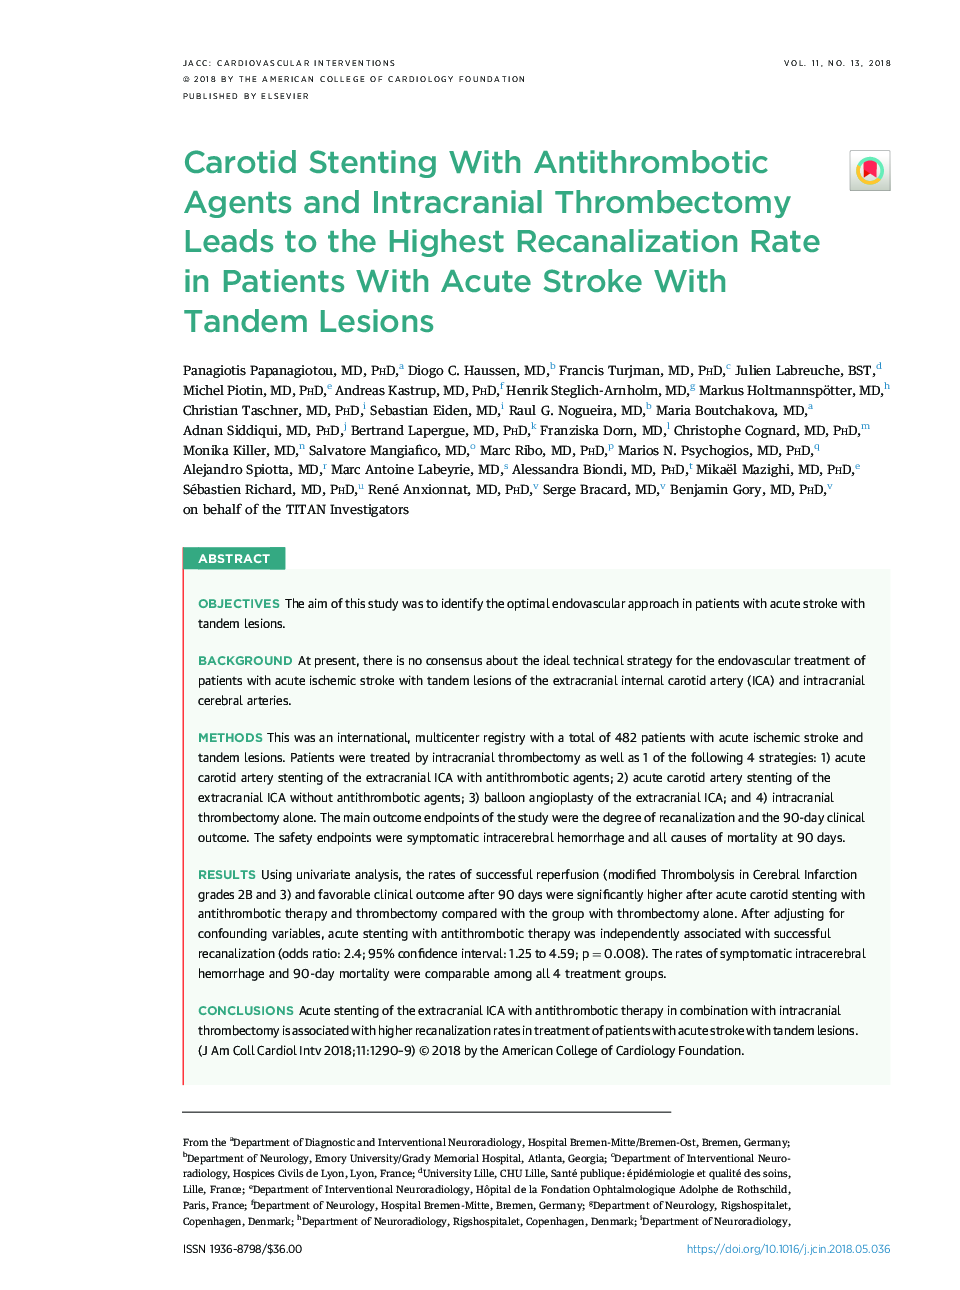 استنتن کاروتید با عوامل ضدترومبوتیک و ترومبکتومی داخل جمجمه منجر به بالاترین نرخ بازآزمایی در بیماران مبتلا به سکته حاد با ضایعات تاندوم 